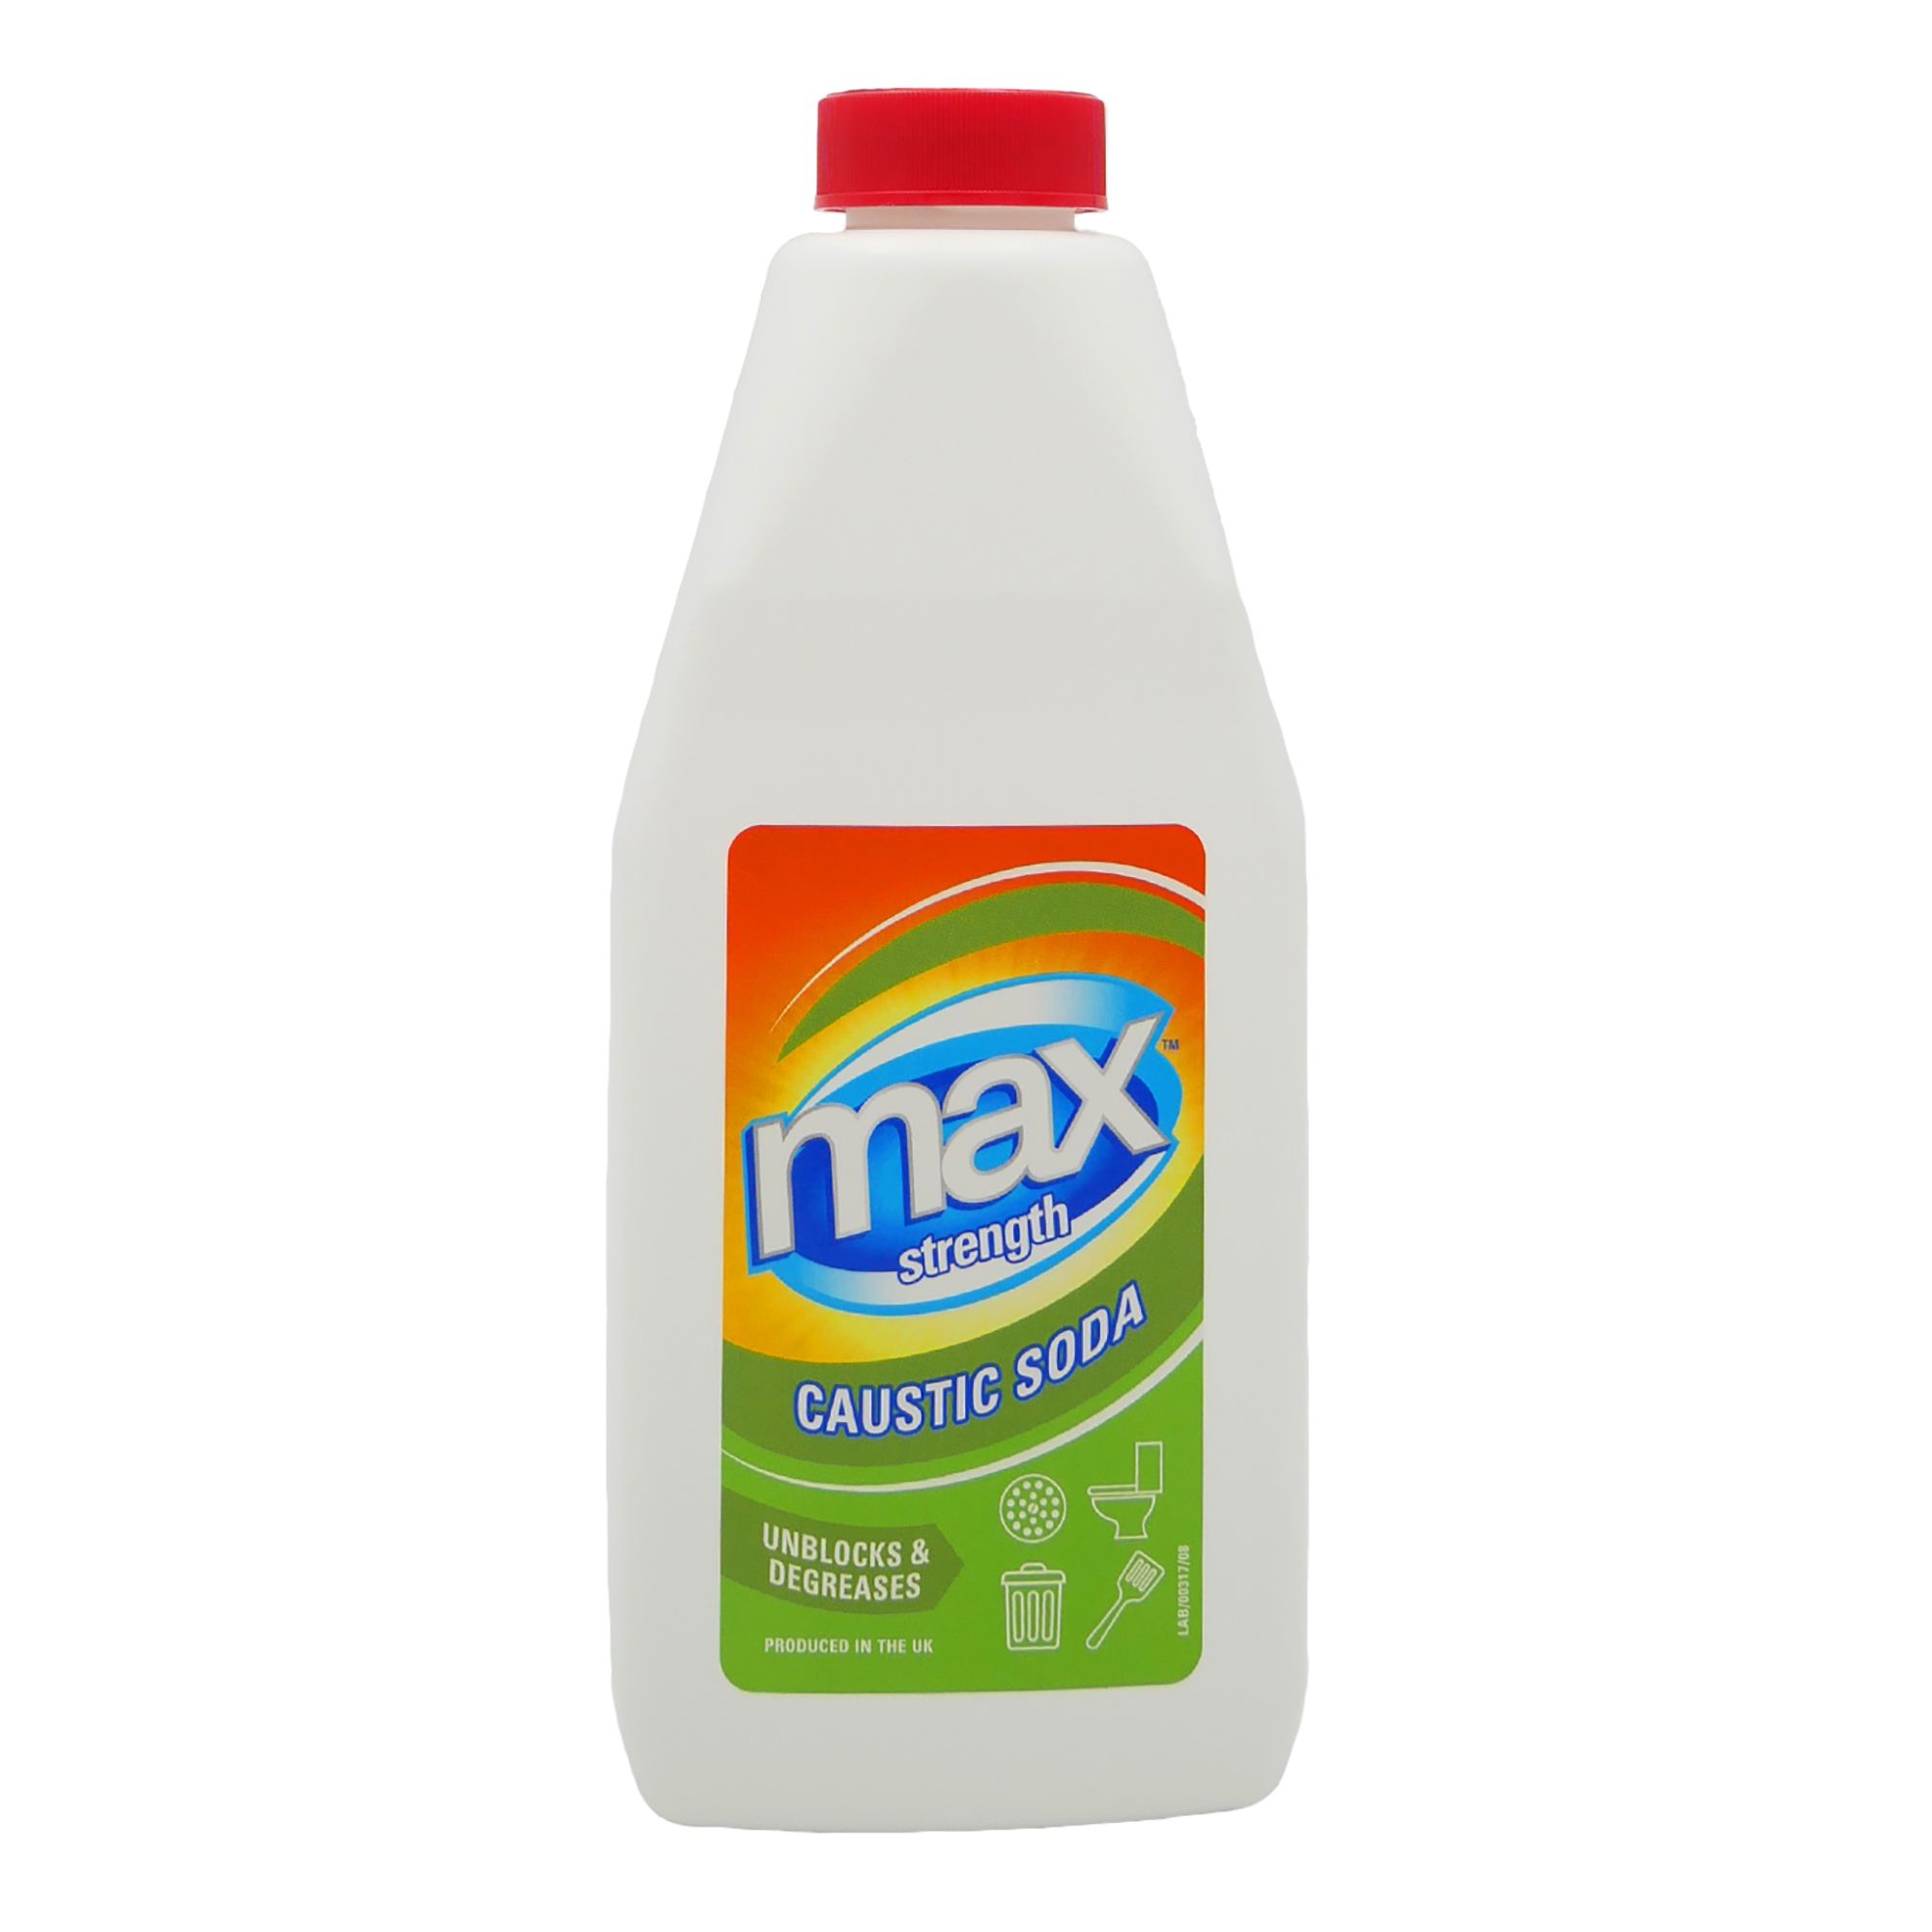 Max strength Granules Caustic soda, 1L